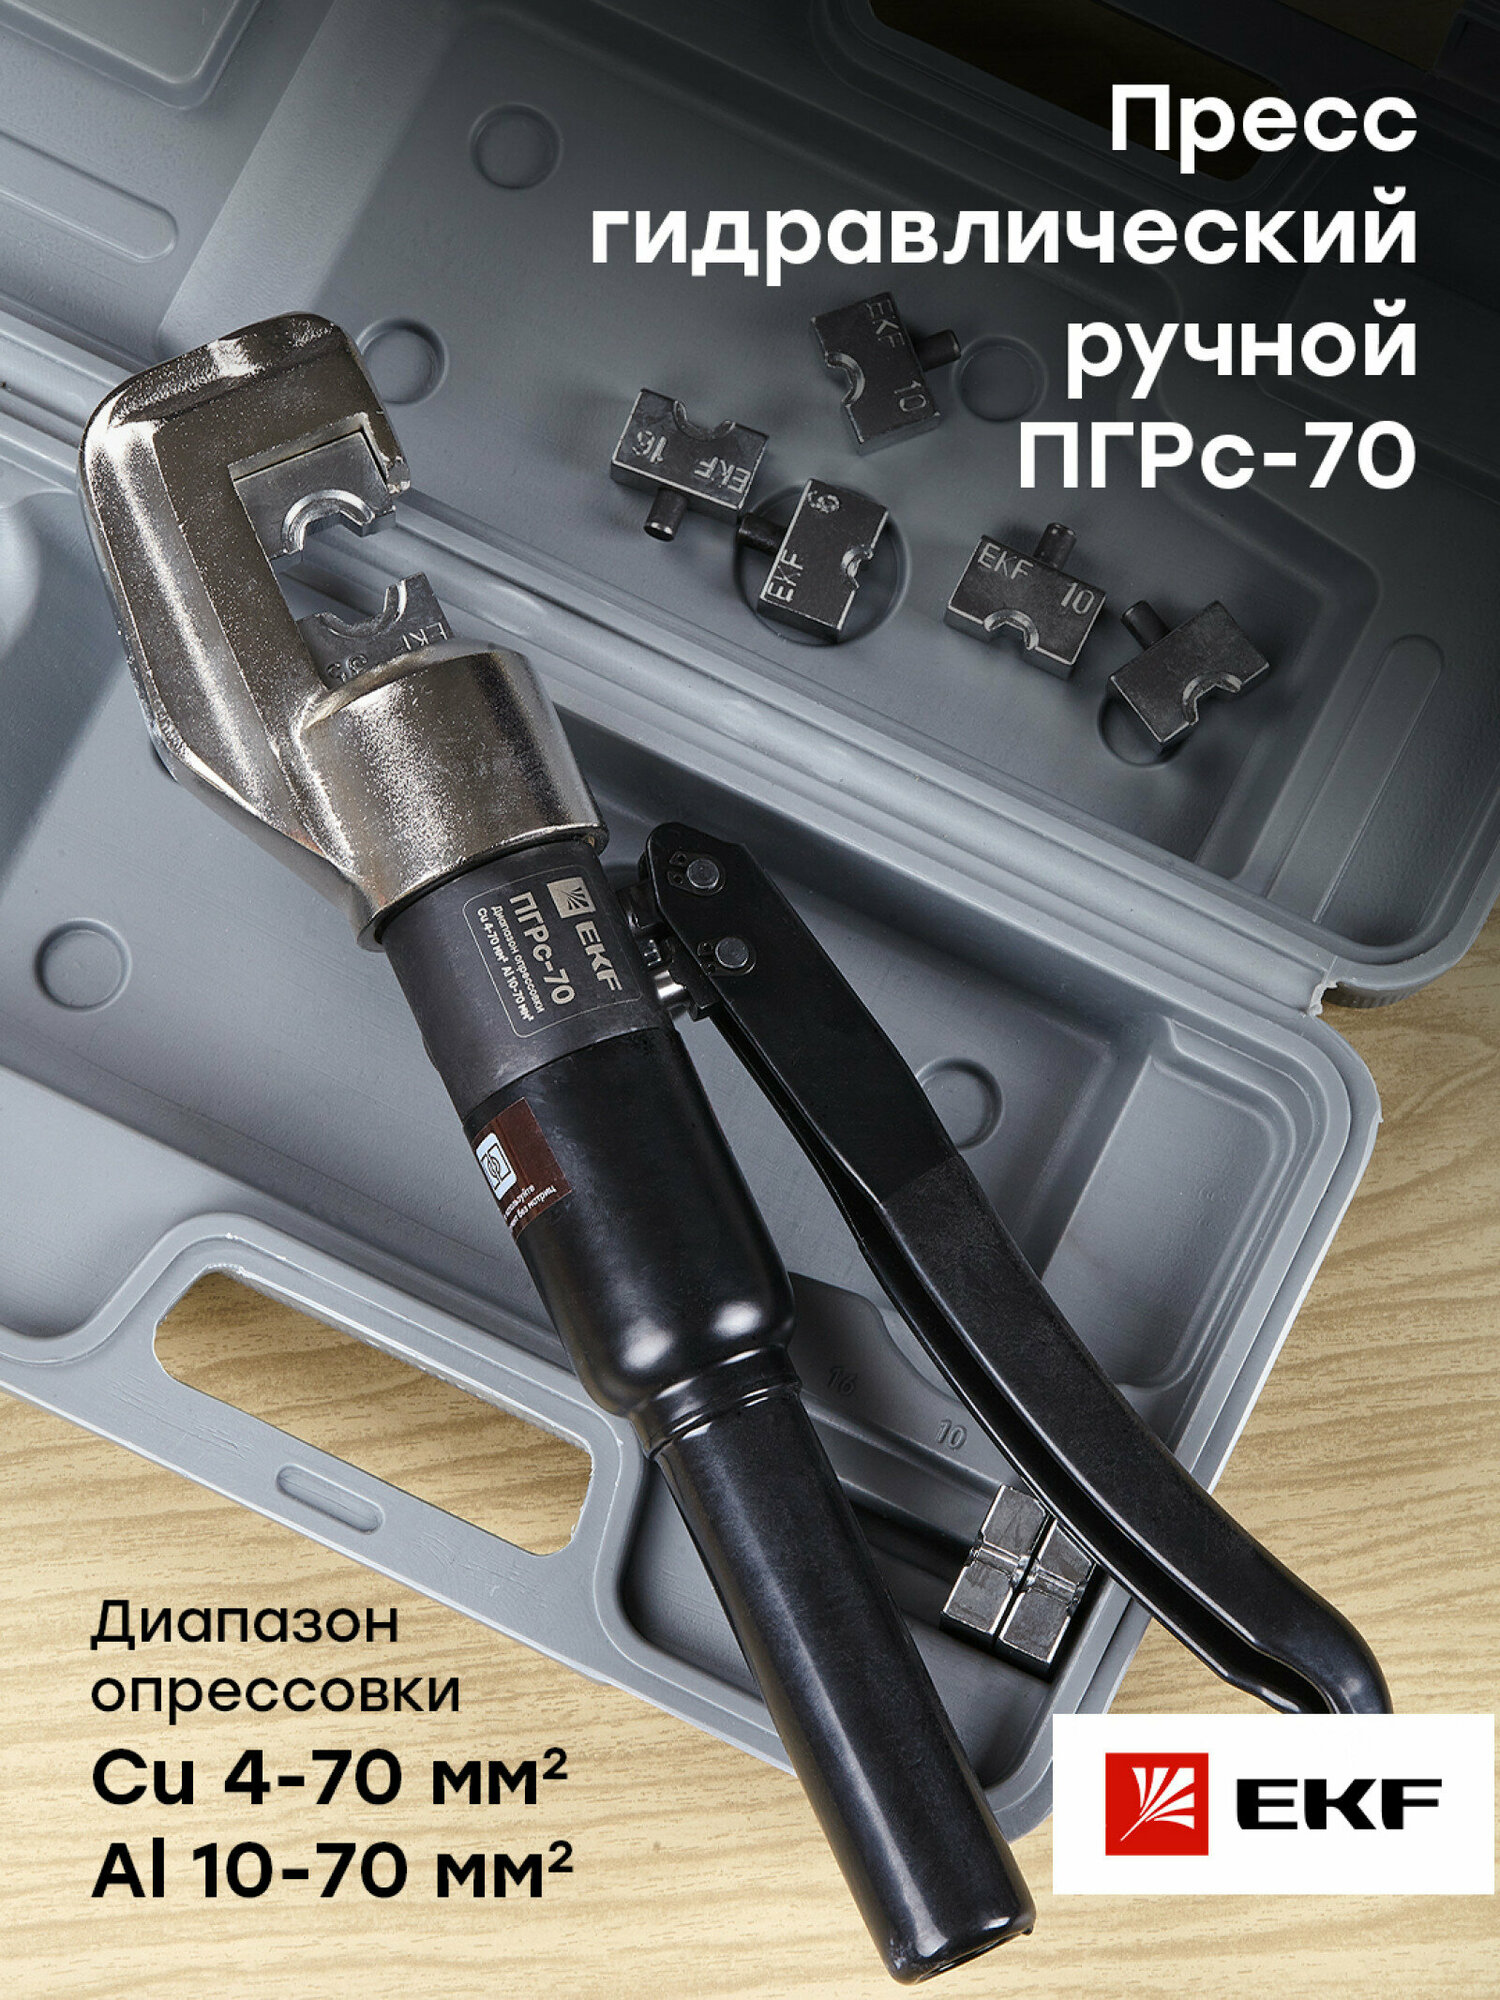 Пресс гидравлический ручной ПГРс-70 EKF Expert